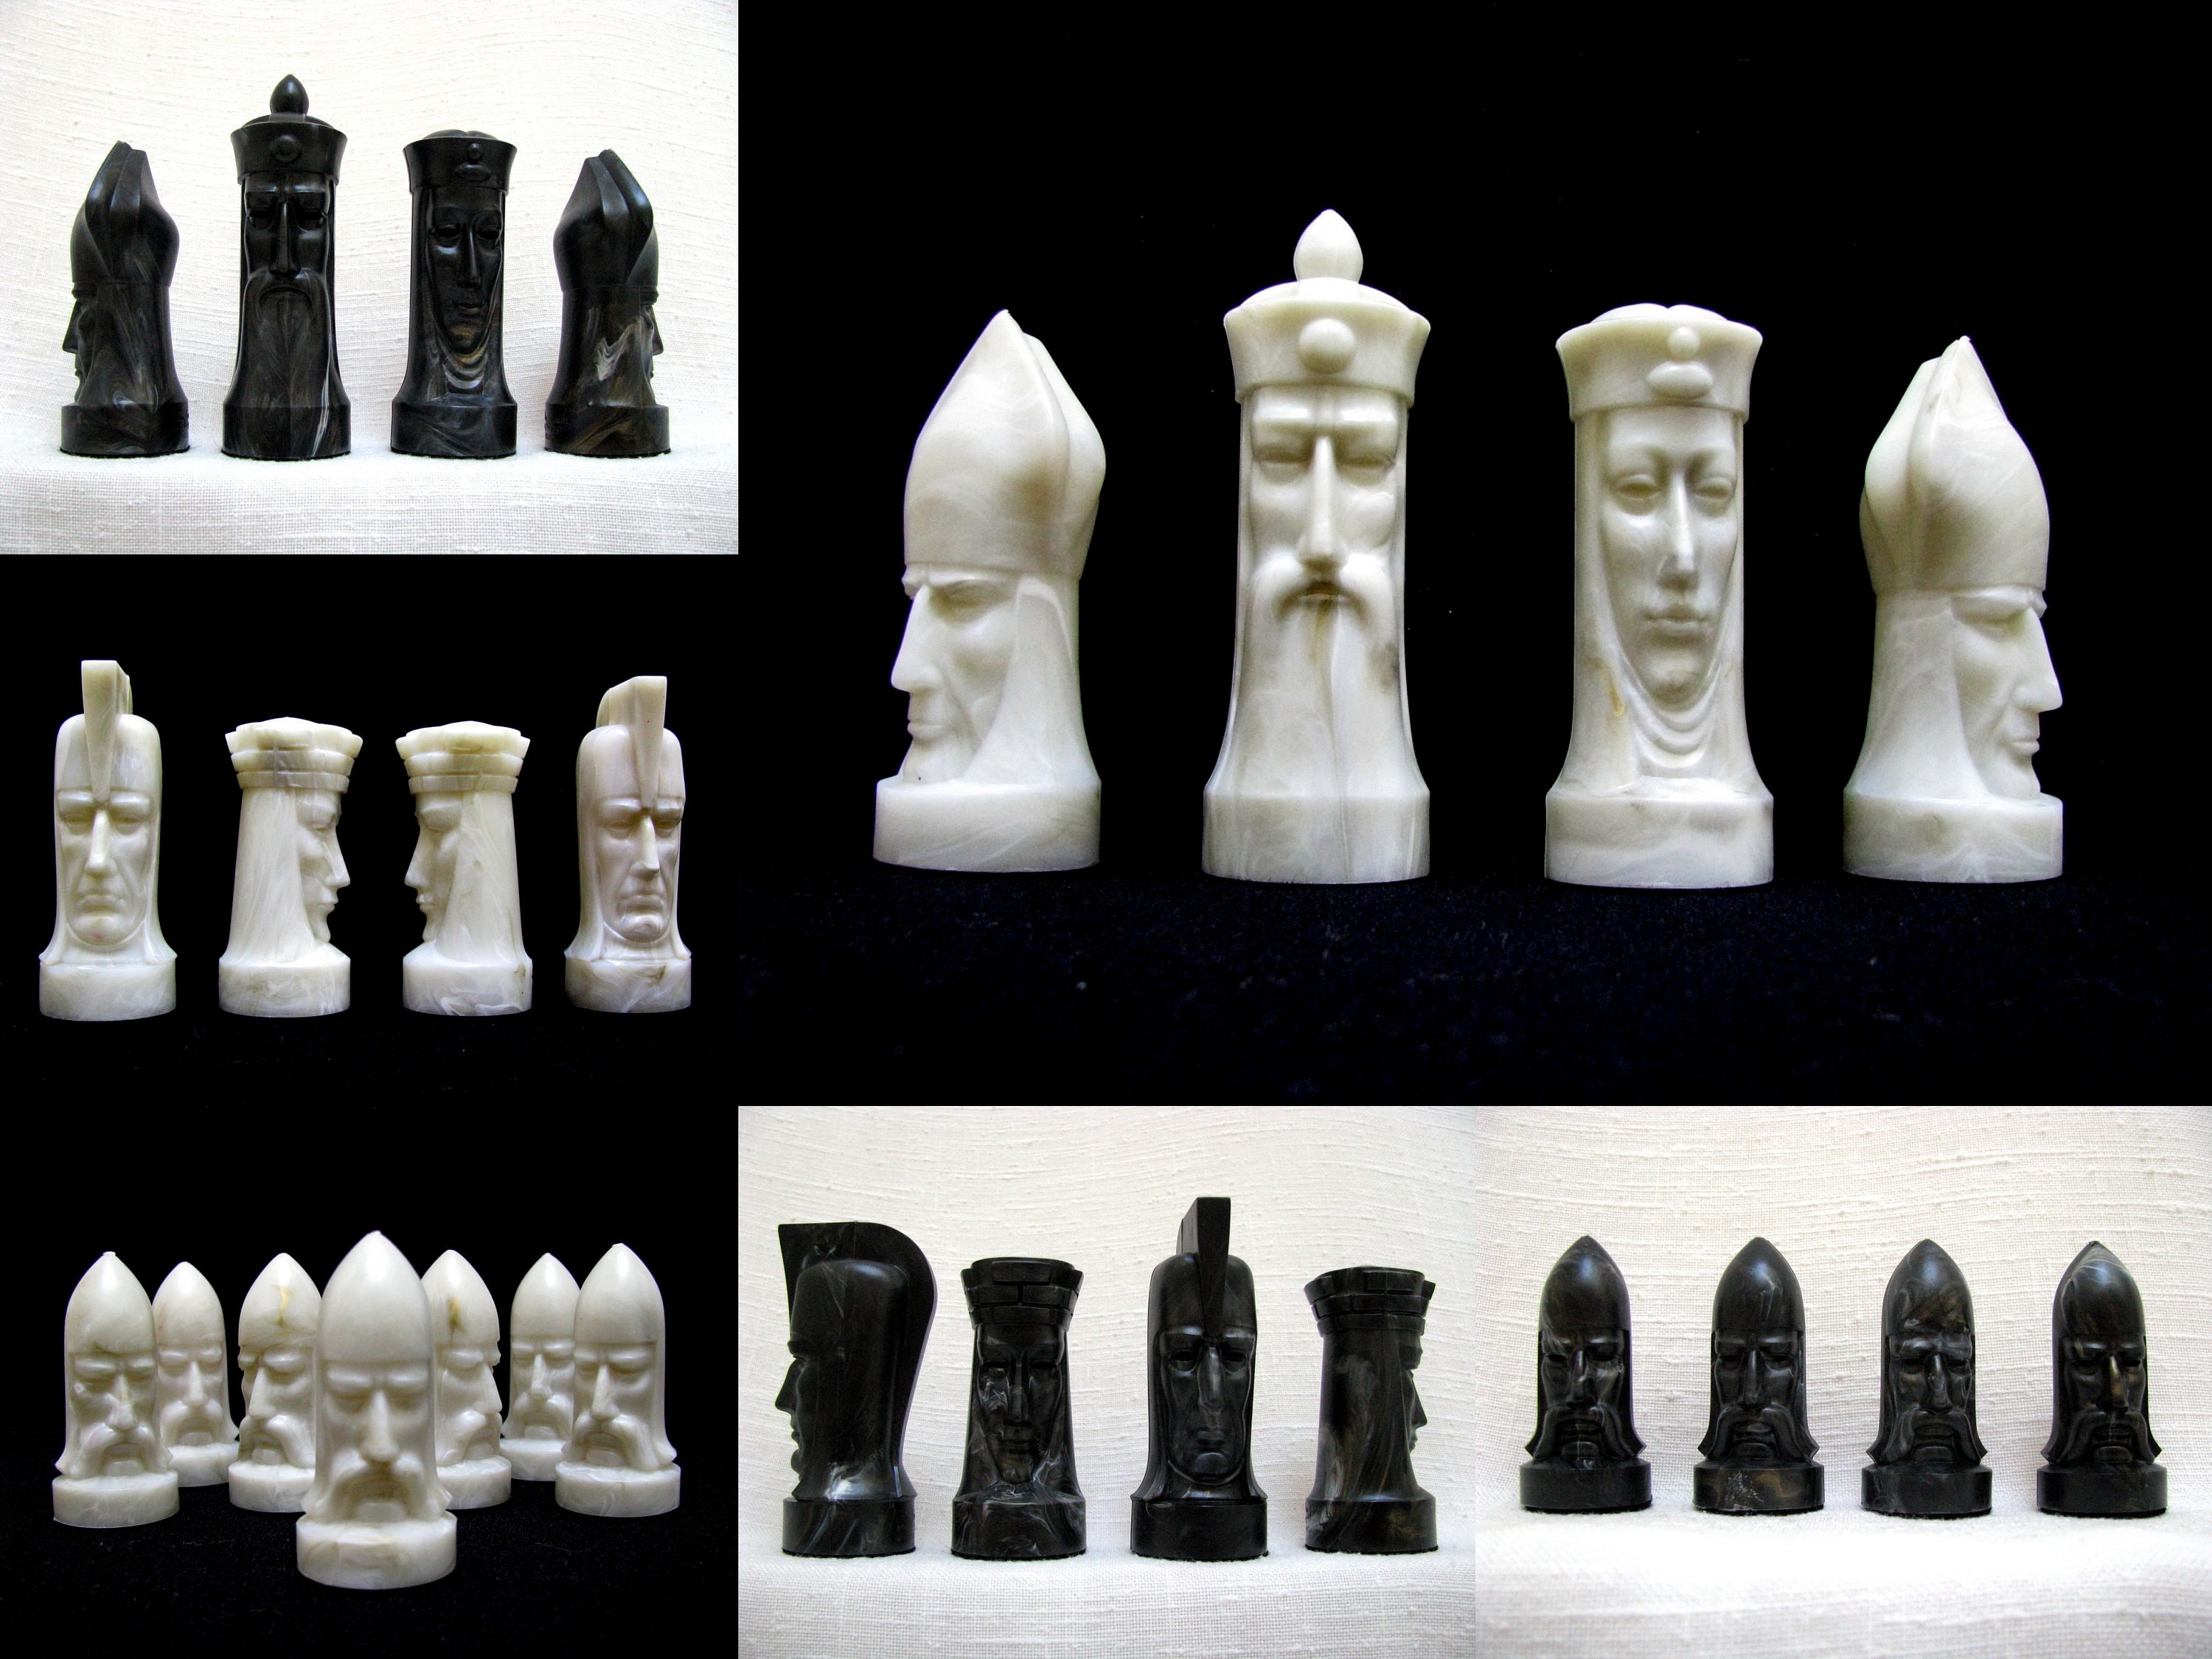 Salon edition 1957 Vintage Mid Century Sculptured Chess "Gothic" by Ganine